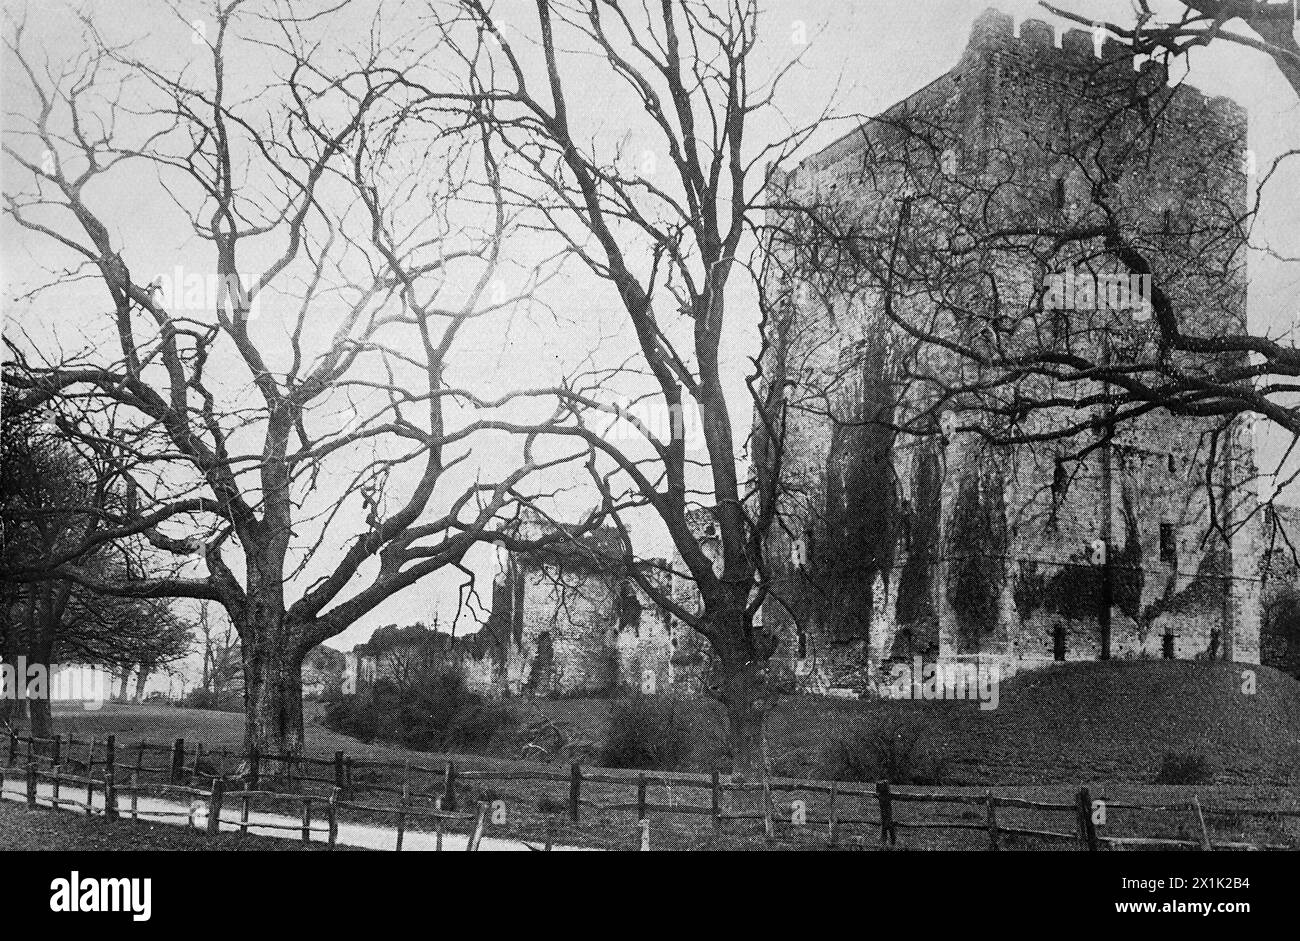 Una vista del castello di Porchester, vicino a Portsmouth, fotografia originale di S. Cribb di Southsea. Originariamente stampato e pubblicato per la Portsmouth and Southsea Improvement Association, c1924. Foto Stock